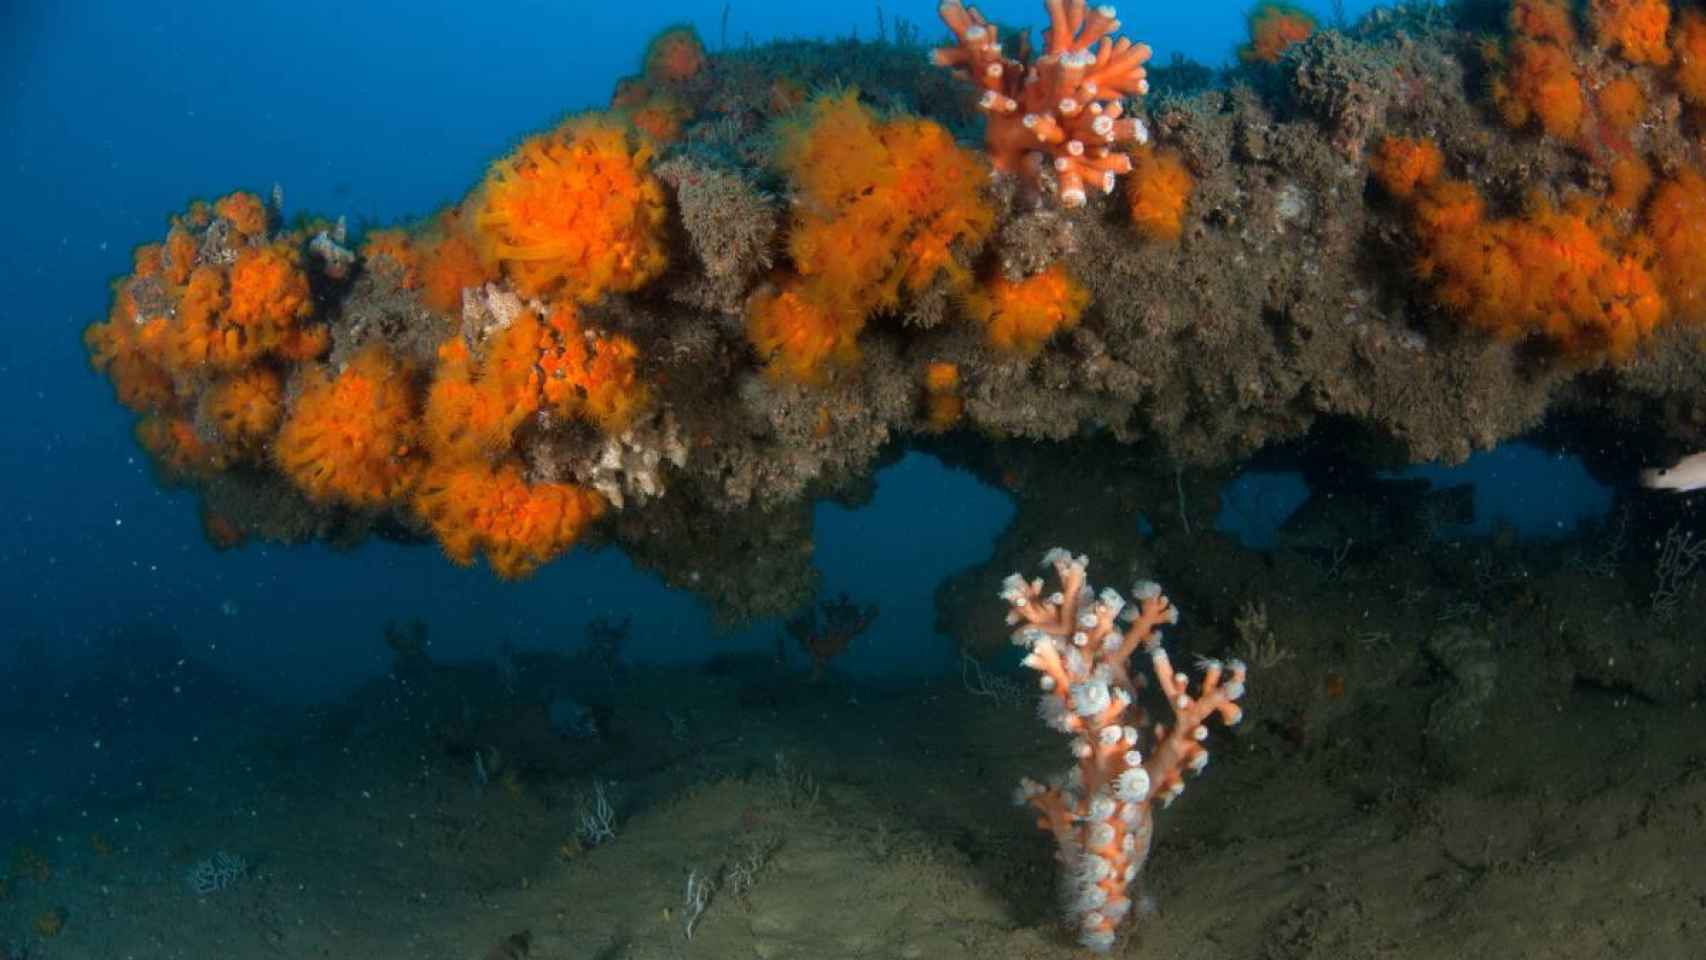 Corales anaranjados (Astroides calycularis) y corales árbol (Dendrophyllia ramea) en Rota (Cádiz)